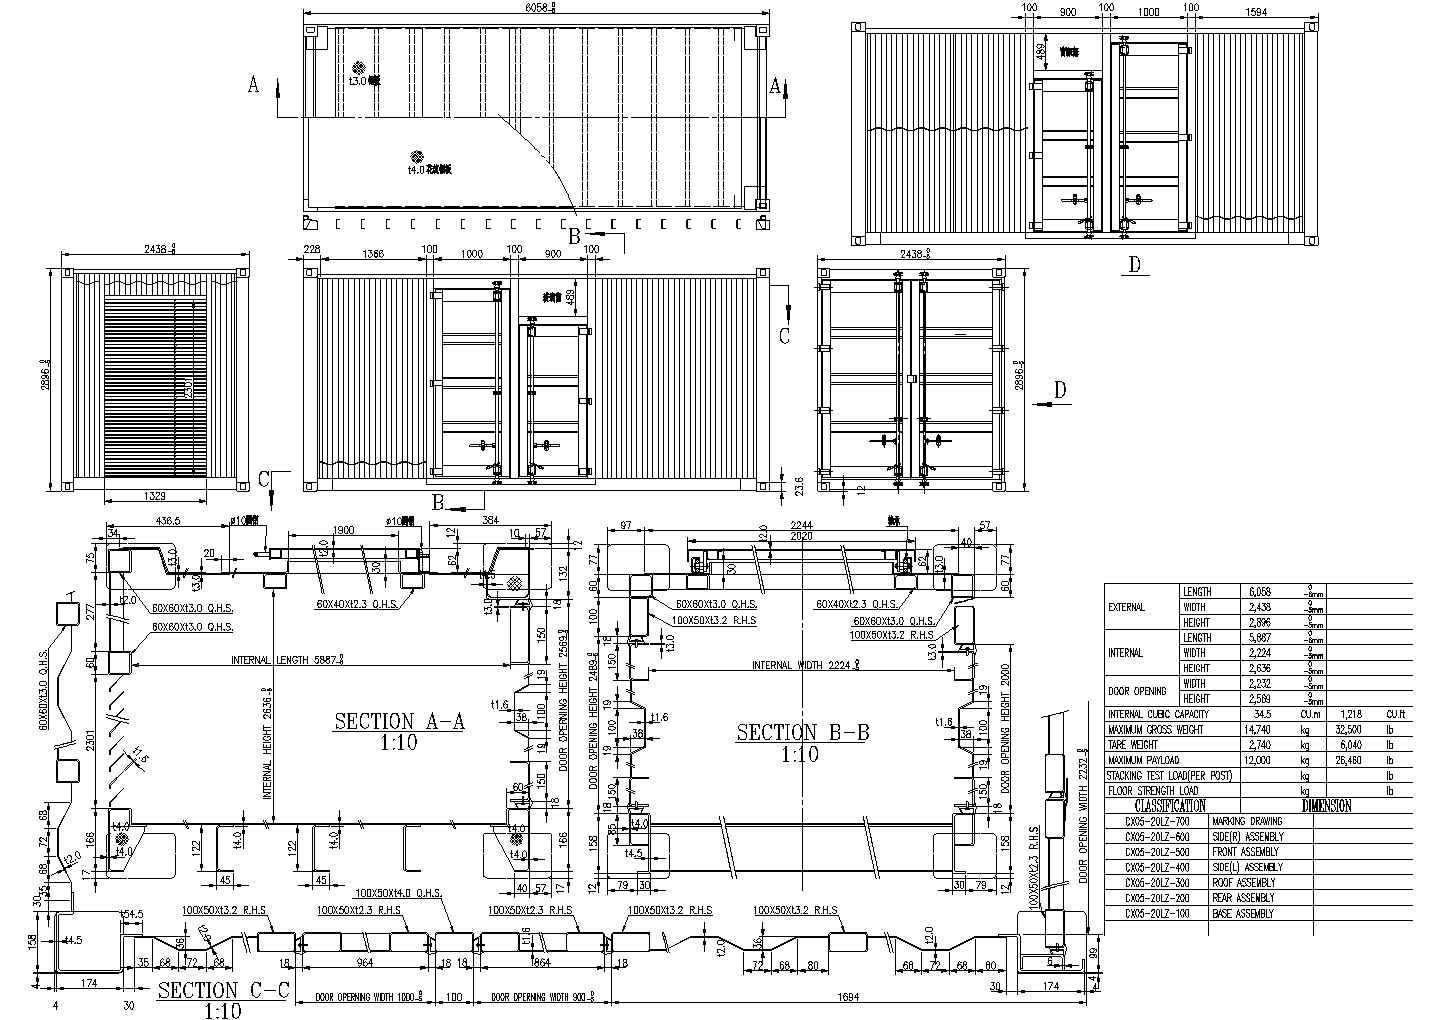 广州全新集装箱海运货柜40尺HQ高柜集装箱全套配件-阿里巴巴